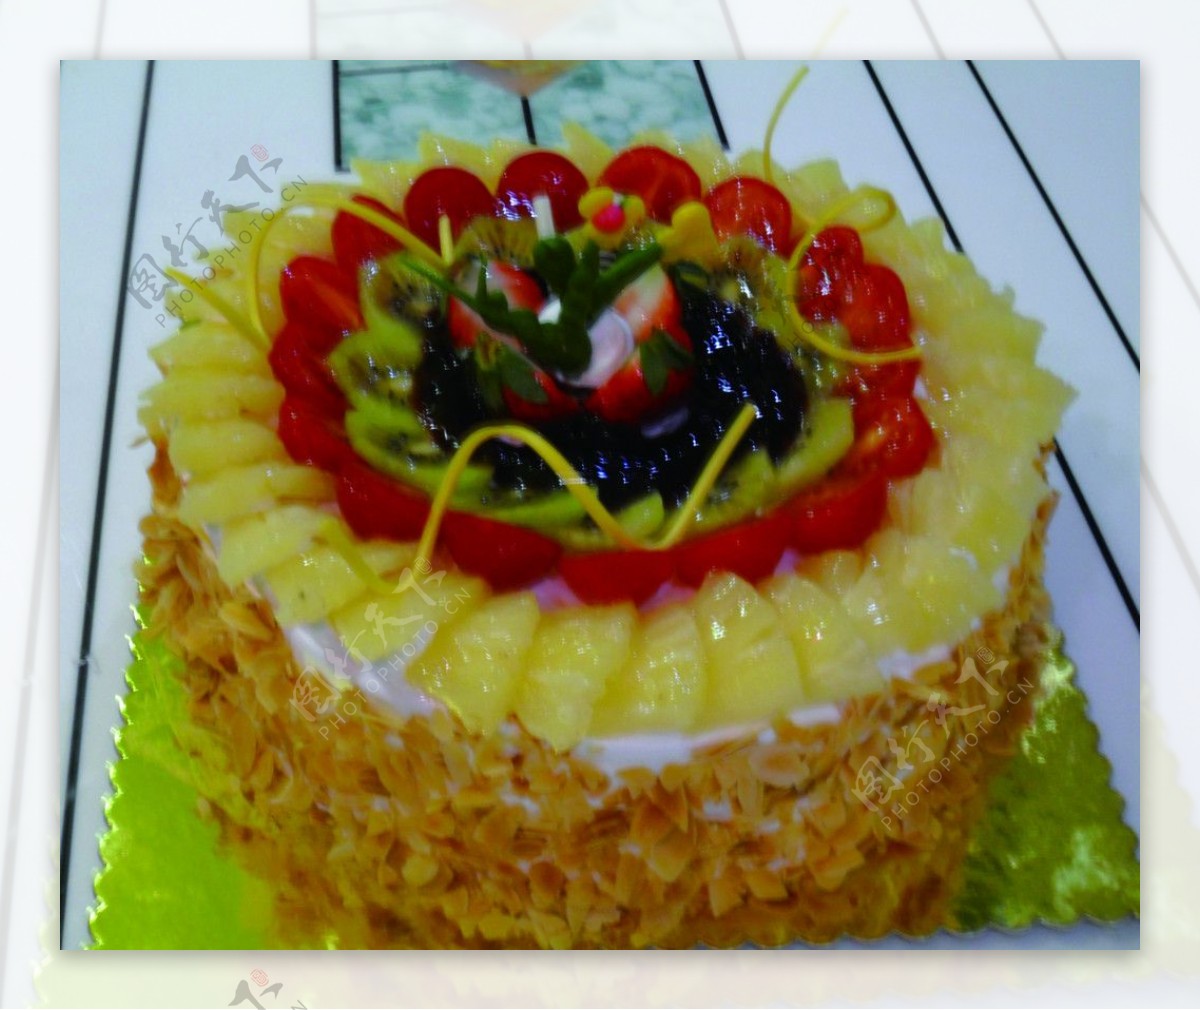 菠萝蛋糕图片